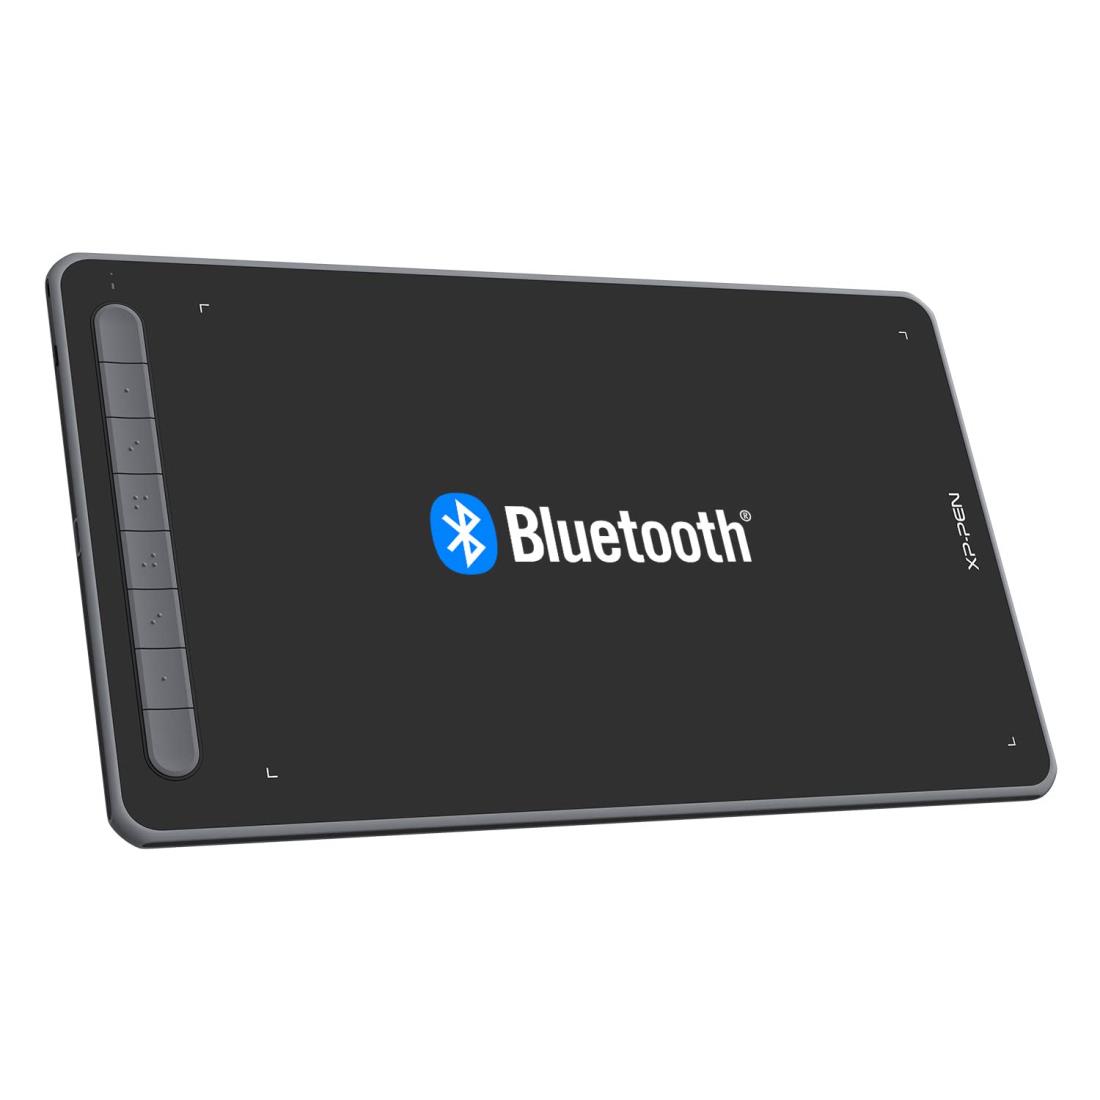 XPPen ペンタブ Deco LW ワイヤレス Bluetooth対応 板タブ ペンタブレット 10x6インチ X3チップ搭載ペン 傾き検知 選べる4色 デザイン テレワーク お絵かきソフト付 iPhoneのibisPaintに対応 Android/Windows/Mac/Chromebookに対応（ブラック）